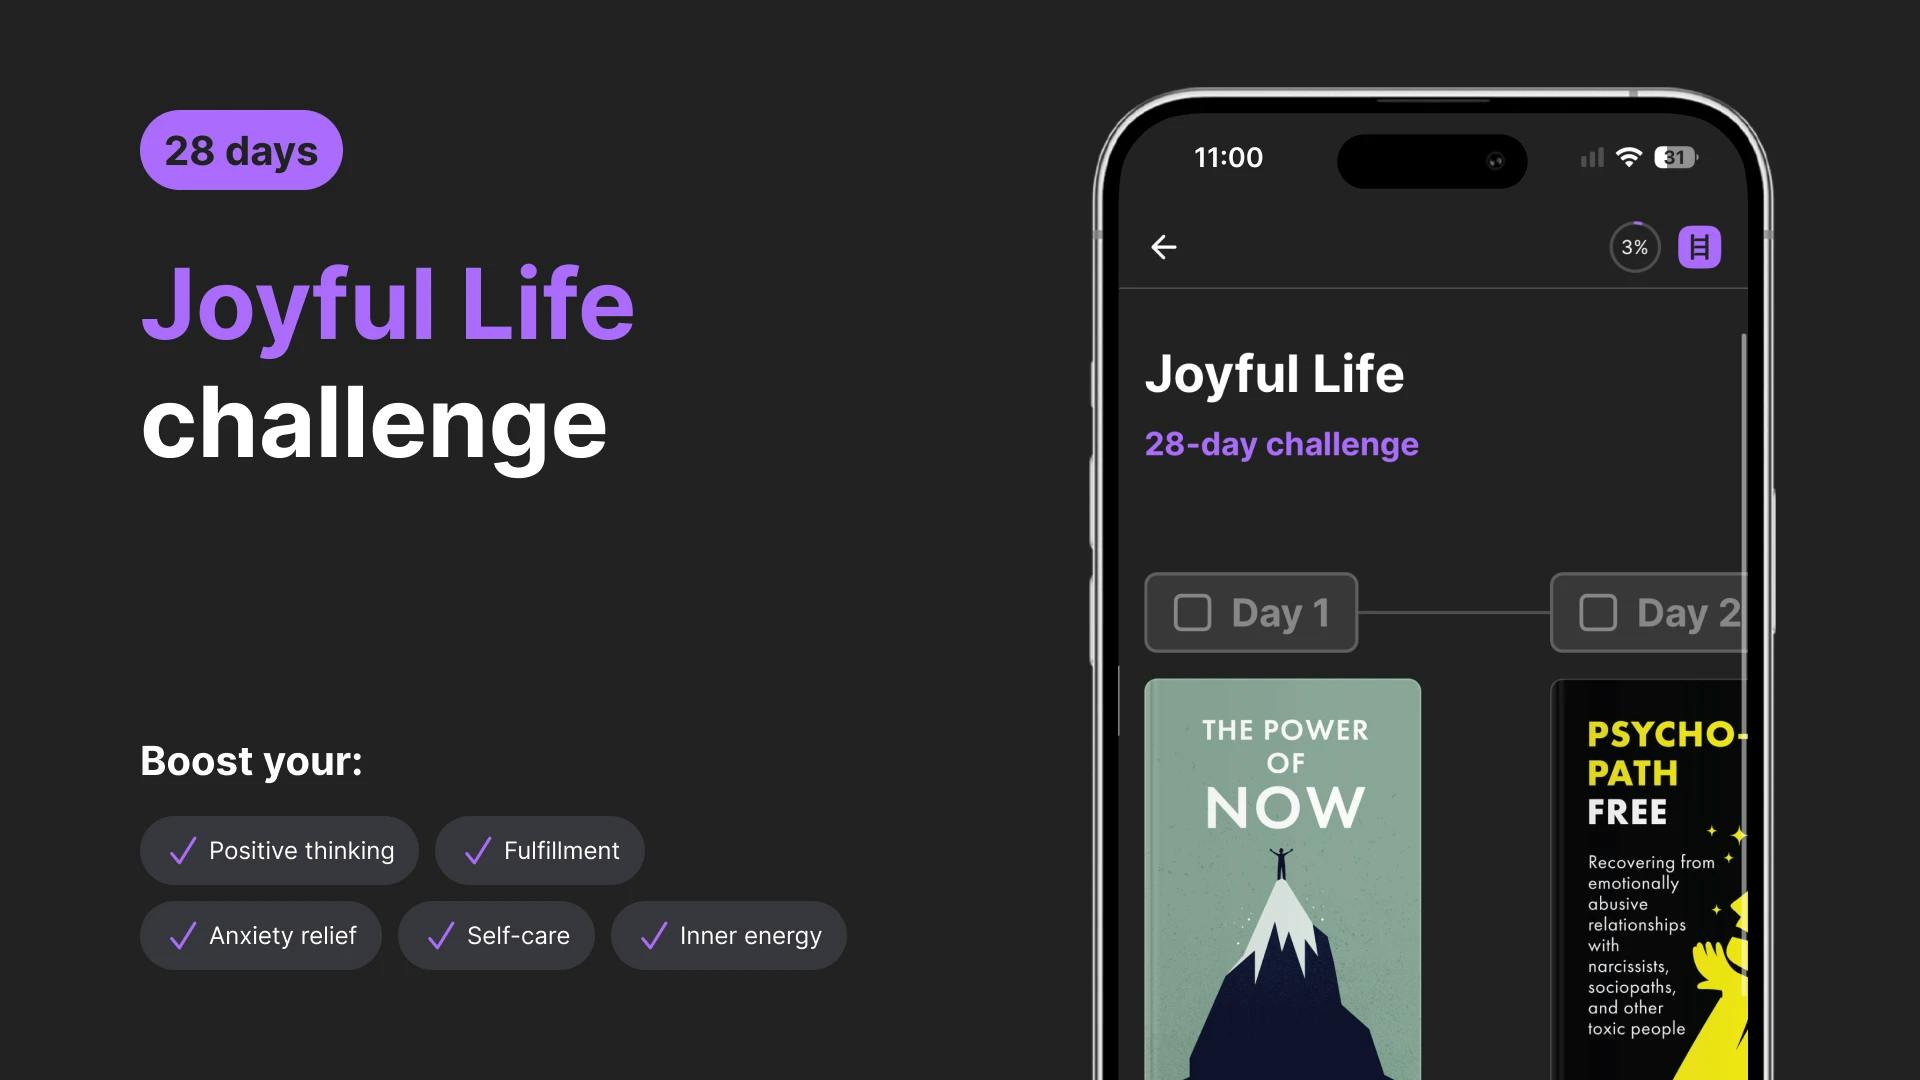 Joyful Life challenge